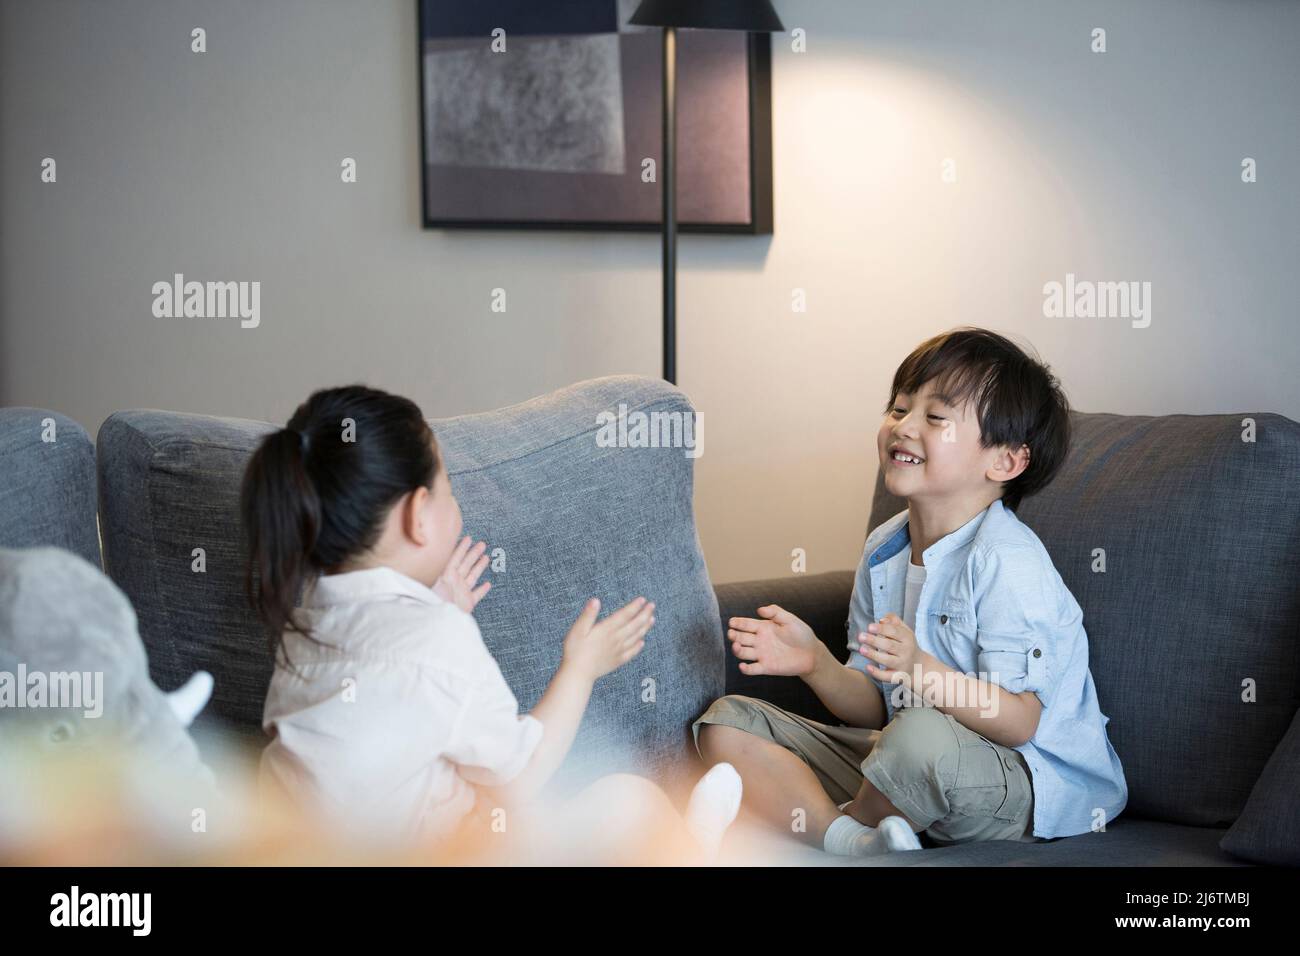 Una bambina e un ragazzino stanno giocando a fare un clic a mano sul divano del soggiorno - foto di scorta Foto Stock